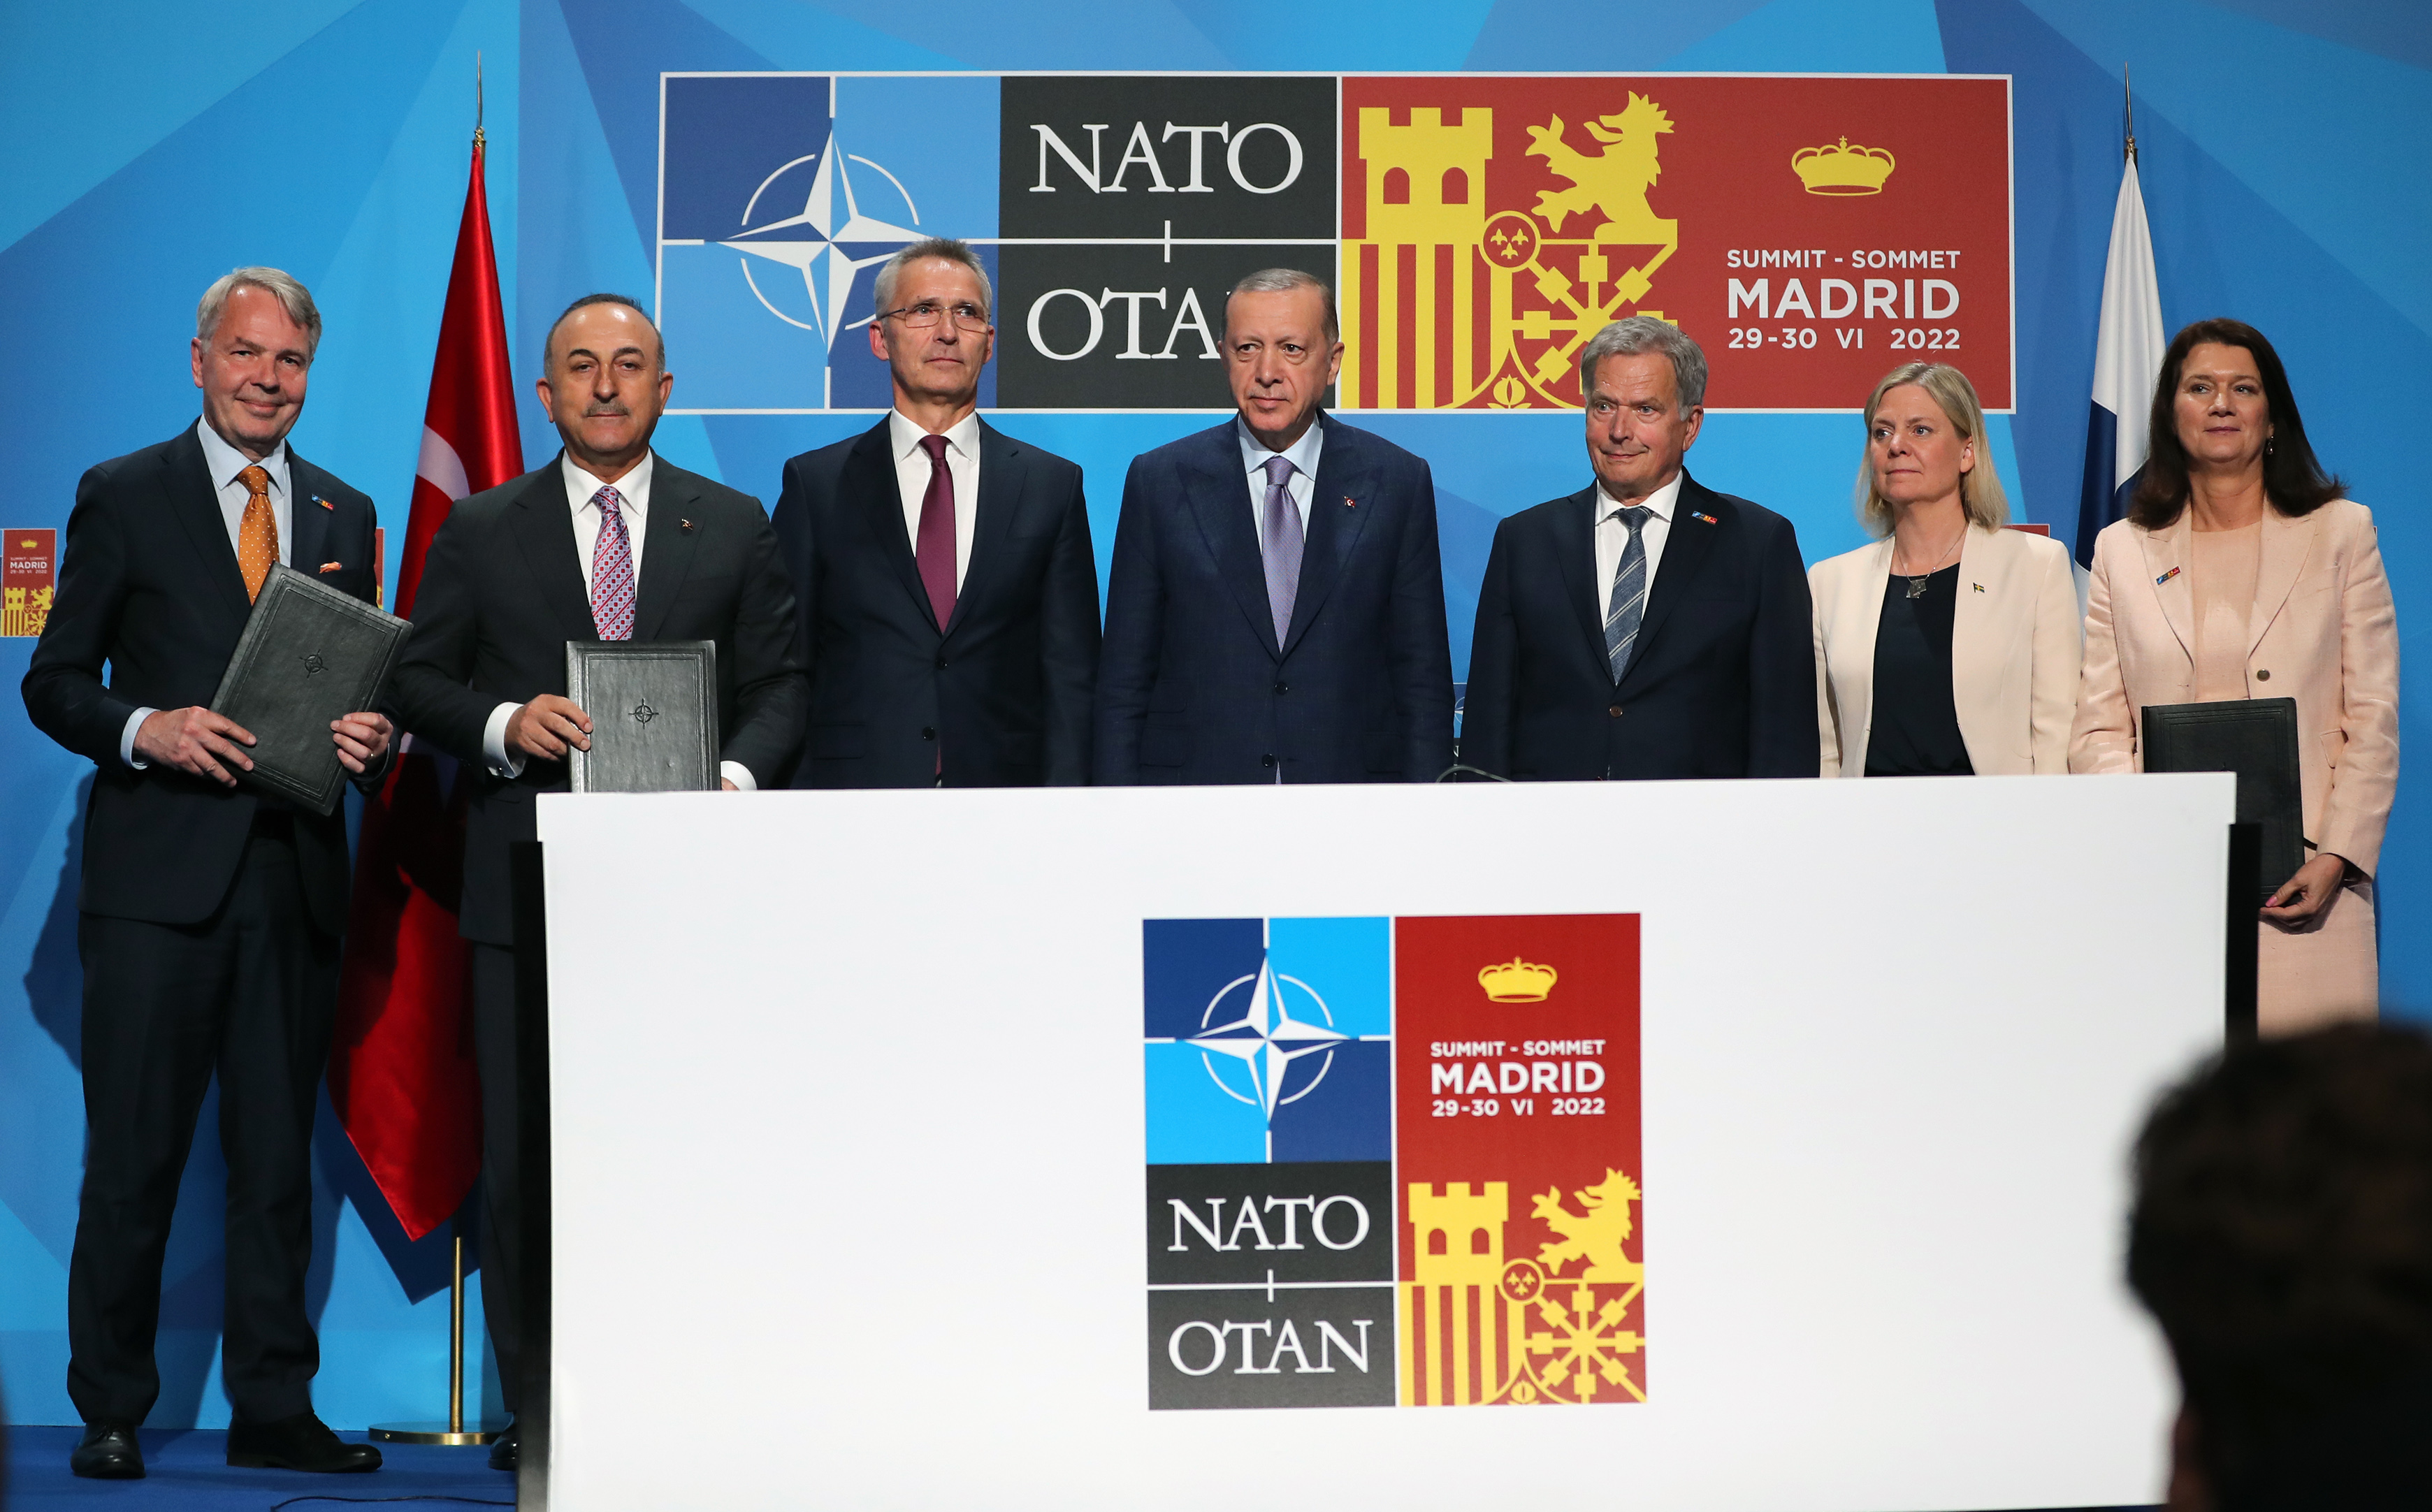 Швеция в нато официально. Саммит НАТО В Мадриде 2022. Турция против вступления Финляндии и Швеции в НАТО. Саммит НАТО 2022. Швеция в НАТО 2022.